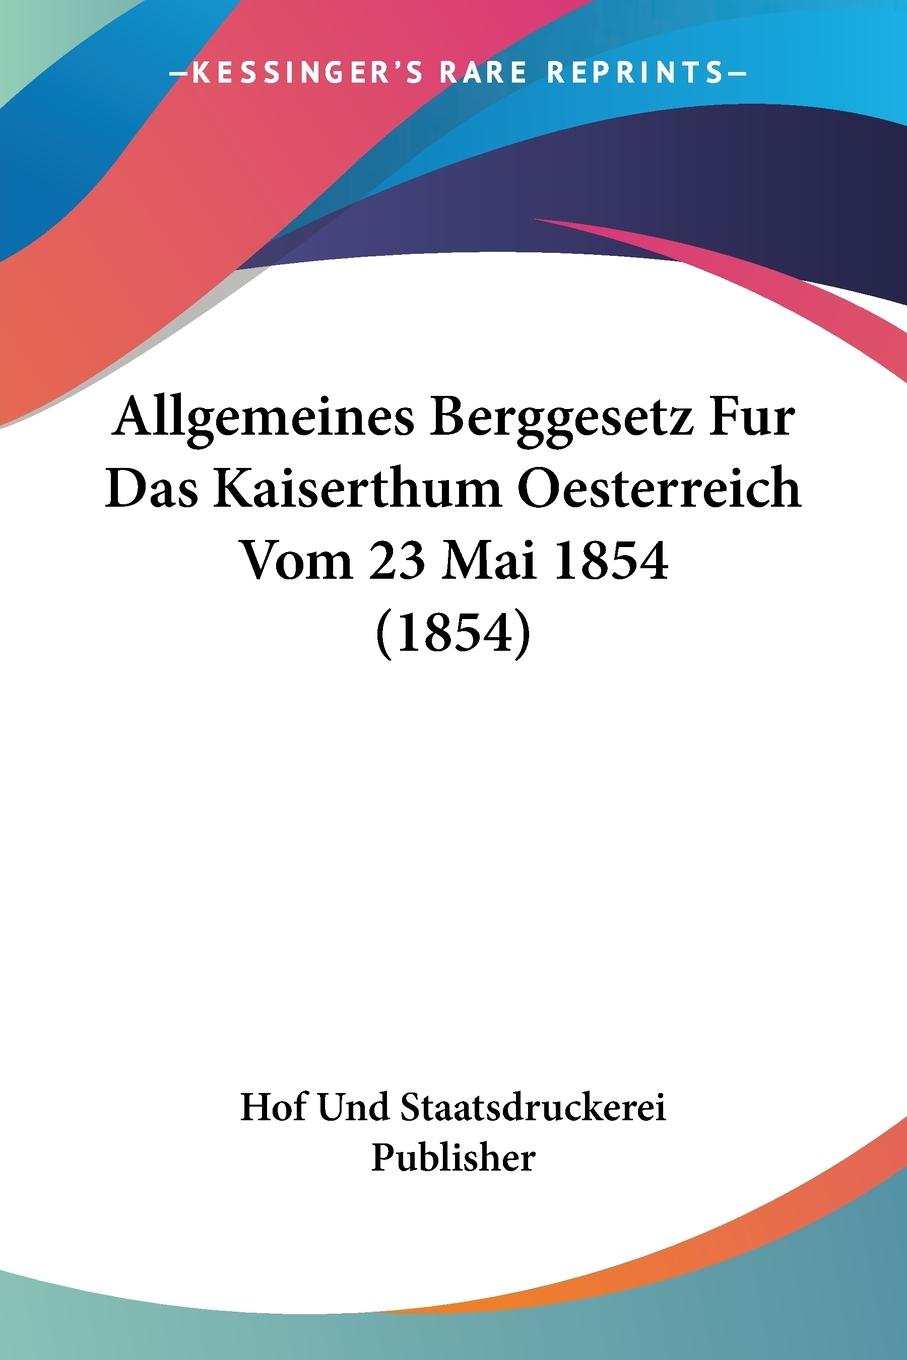 Allgemeines Berggesetz Fur Das Kaiserthum Oesterreich Vom 23 Mai 1854 (1854) - Hof Und Staatsdruckerei Publisher